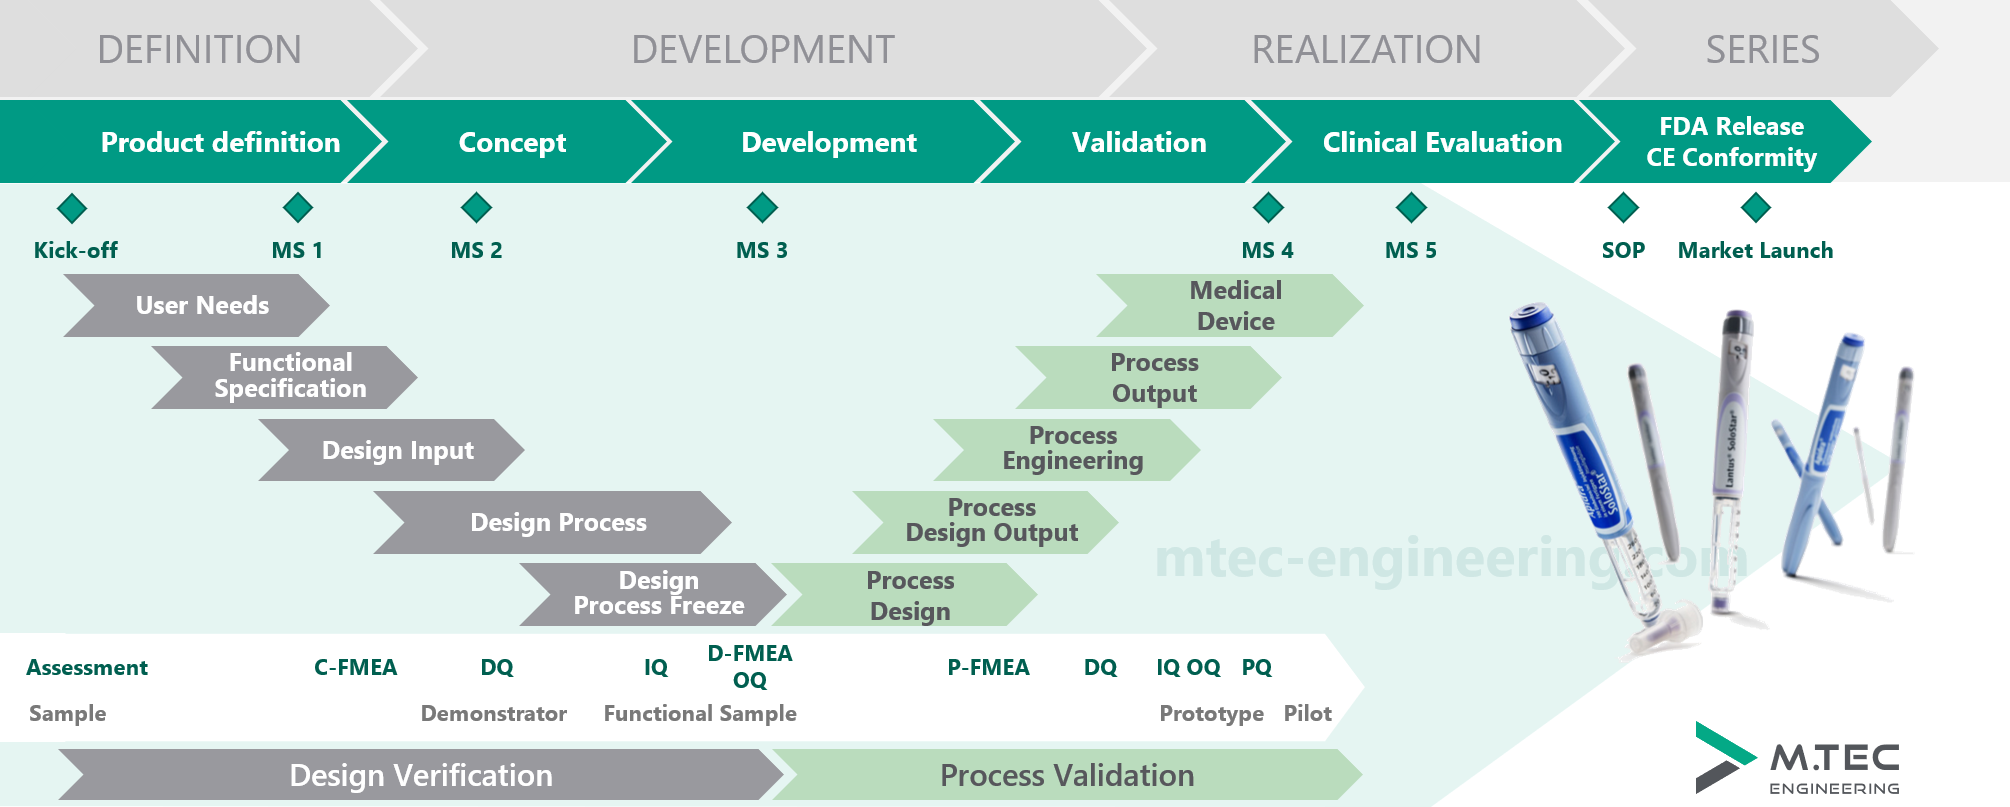 Entwicklungsprozess Medical-Branche, angelehnt an Richtlinien von FDA, MDR und GMP